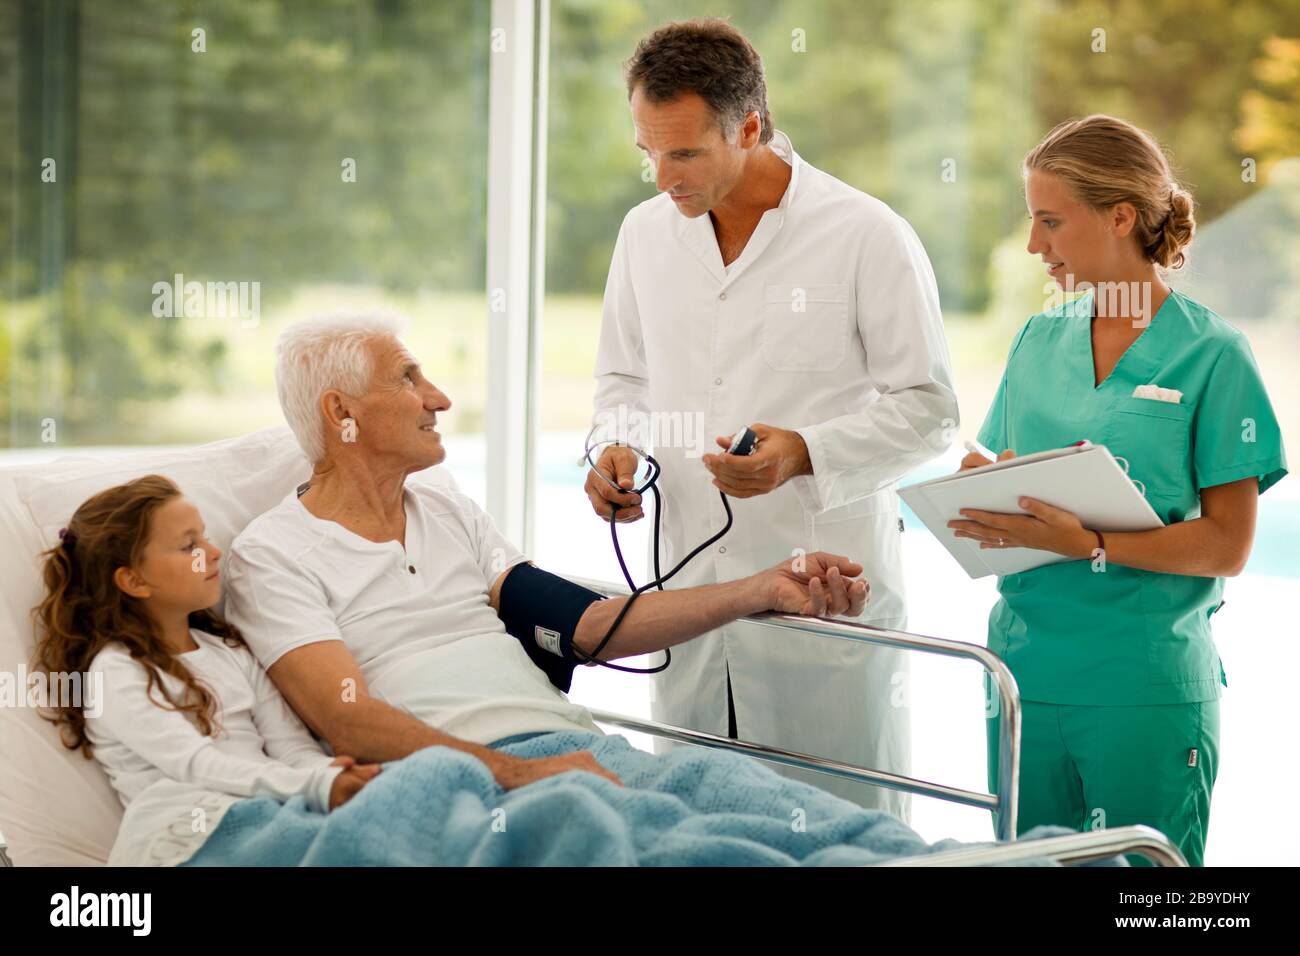 Der ältere Mann hat seinen Blutdruck genommen, während seine Enkelin neben ihm in einem Krankenhausbett liegt. Stockfoto